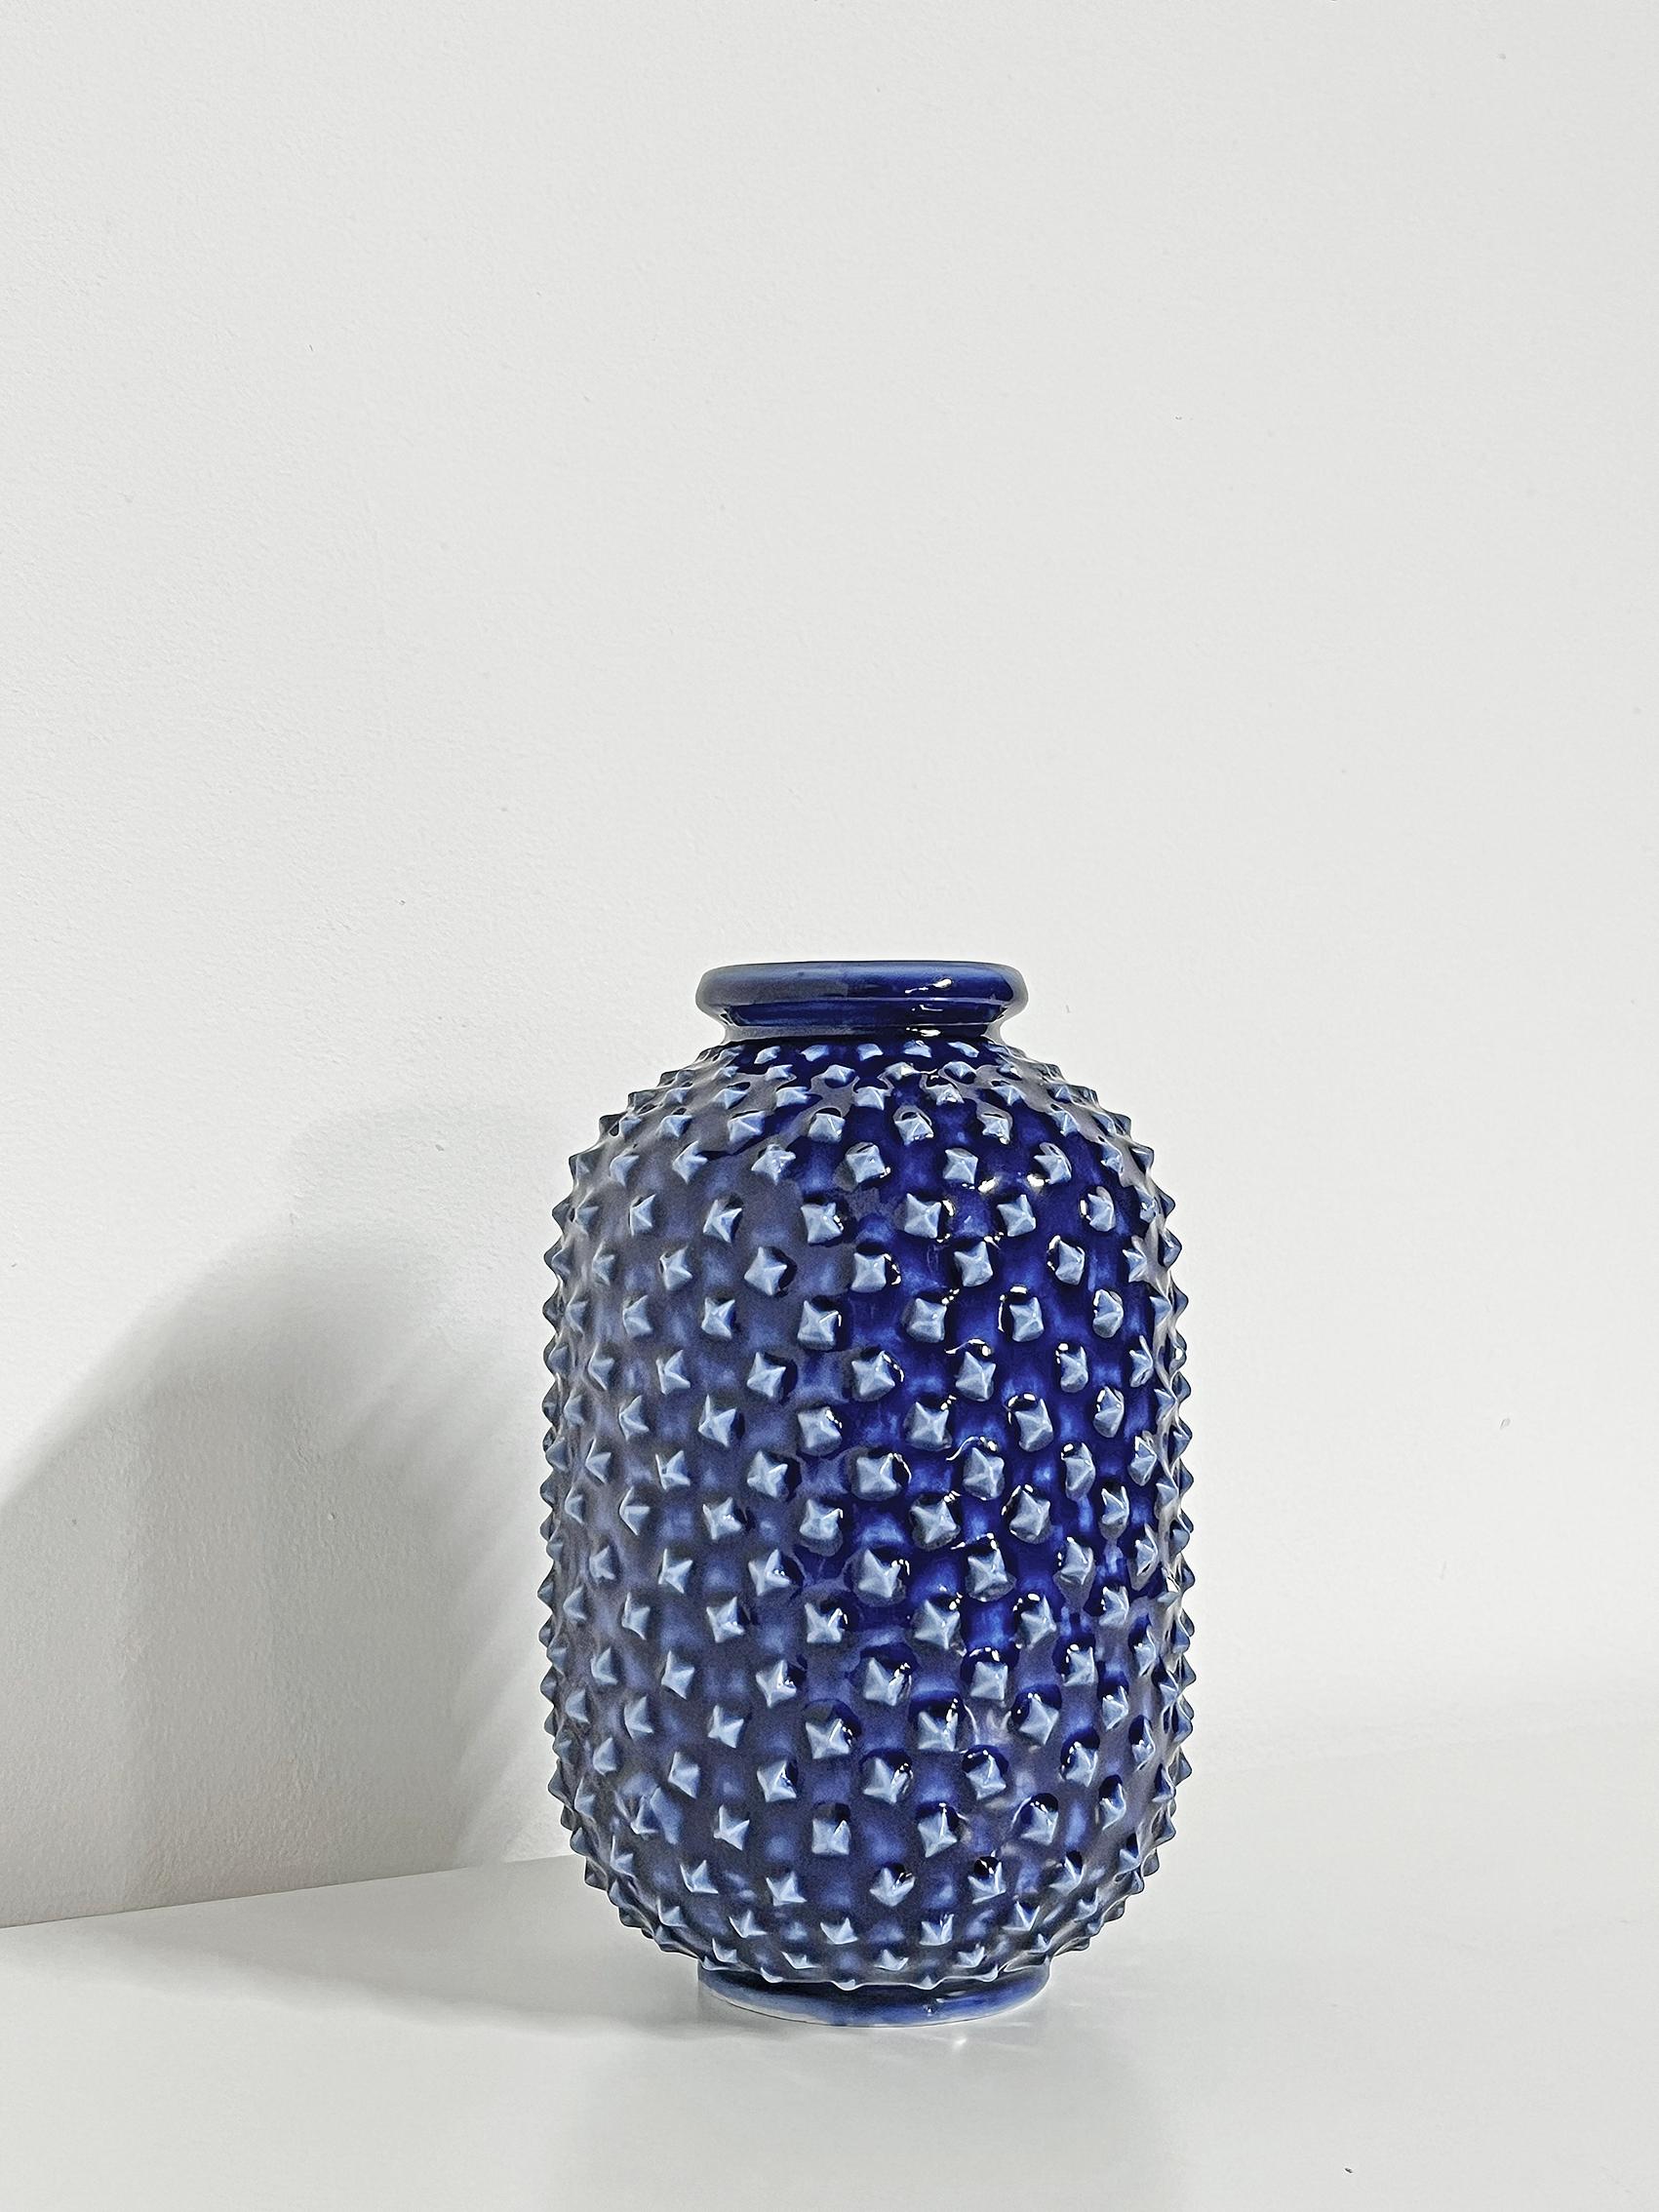 Schöne skandinavische moderne Vase von Gunnar Nylund für Rörstrand, ca. 1950er Jahre.
Signiert mit Herstellerzeichen. 
Guter Vintage-Zustand, Abnutzung und Patina im Einklang mit Alter und Gebrauch. 
Einige Dellen an der Basis der Vase